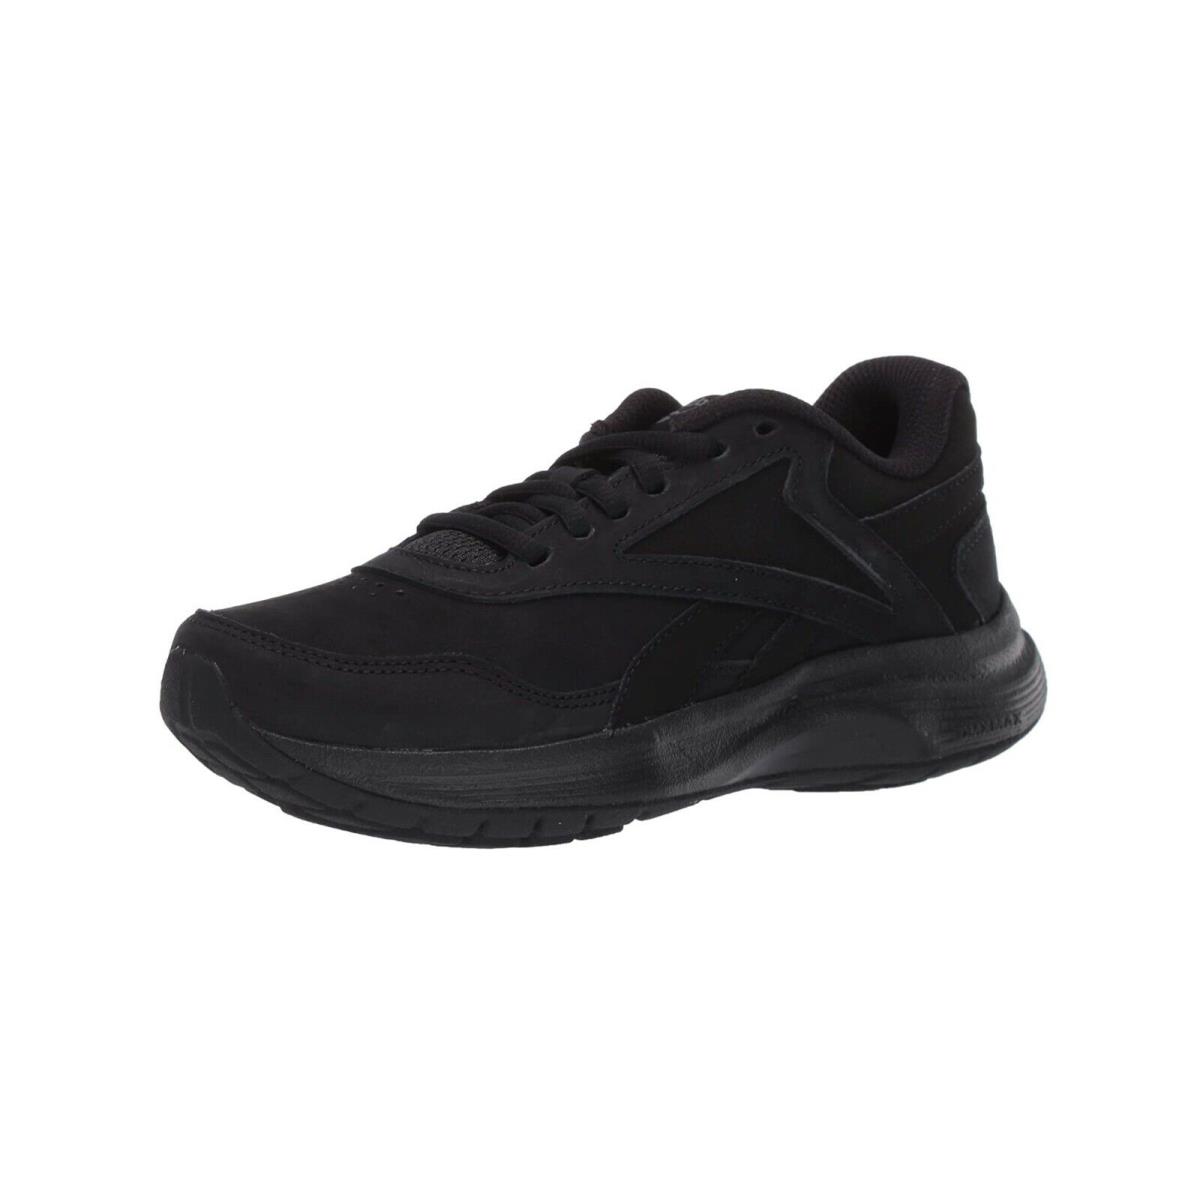 Reebok Walk Ultra 7 Dmx Women Sneakers Black Dark Gray Memory Foam Shoes - Black